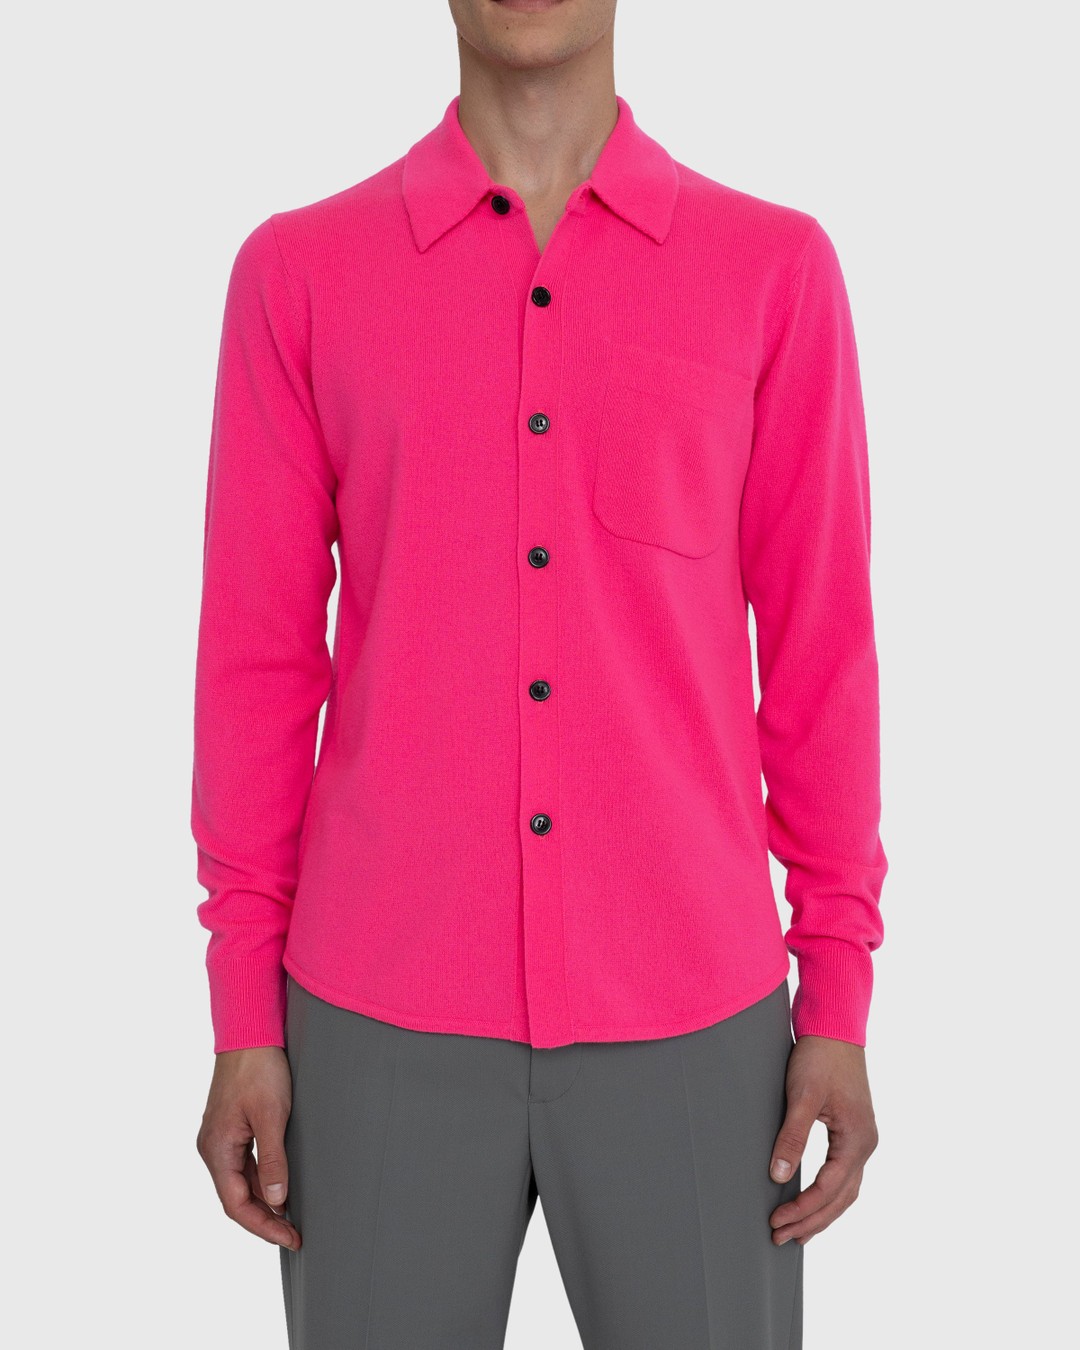 Dries van Noten – Never Cardigan - Knitwear - Pink - Image 2